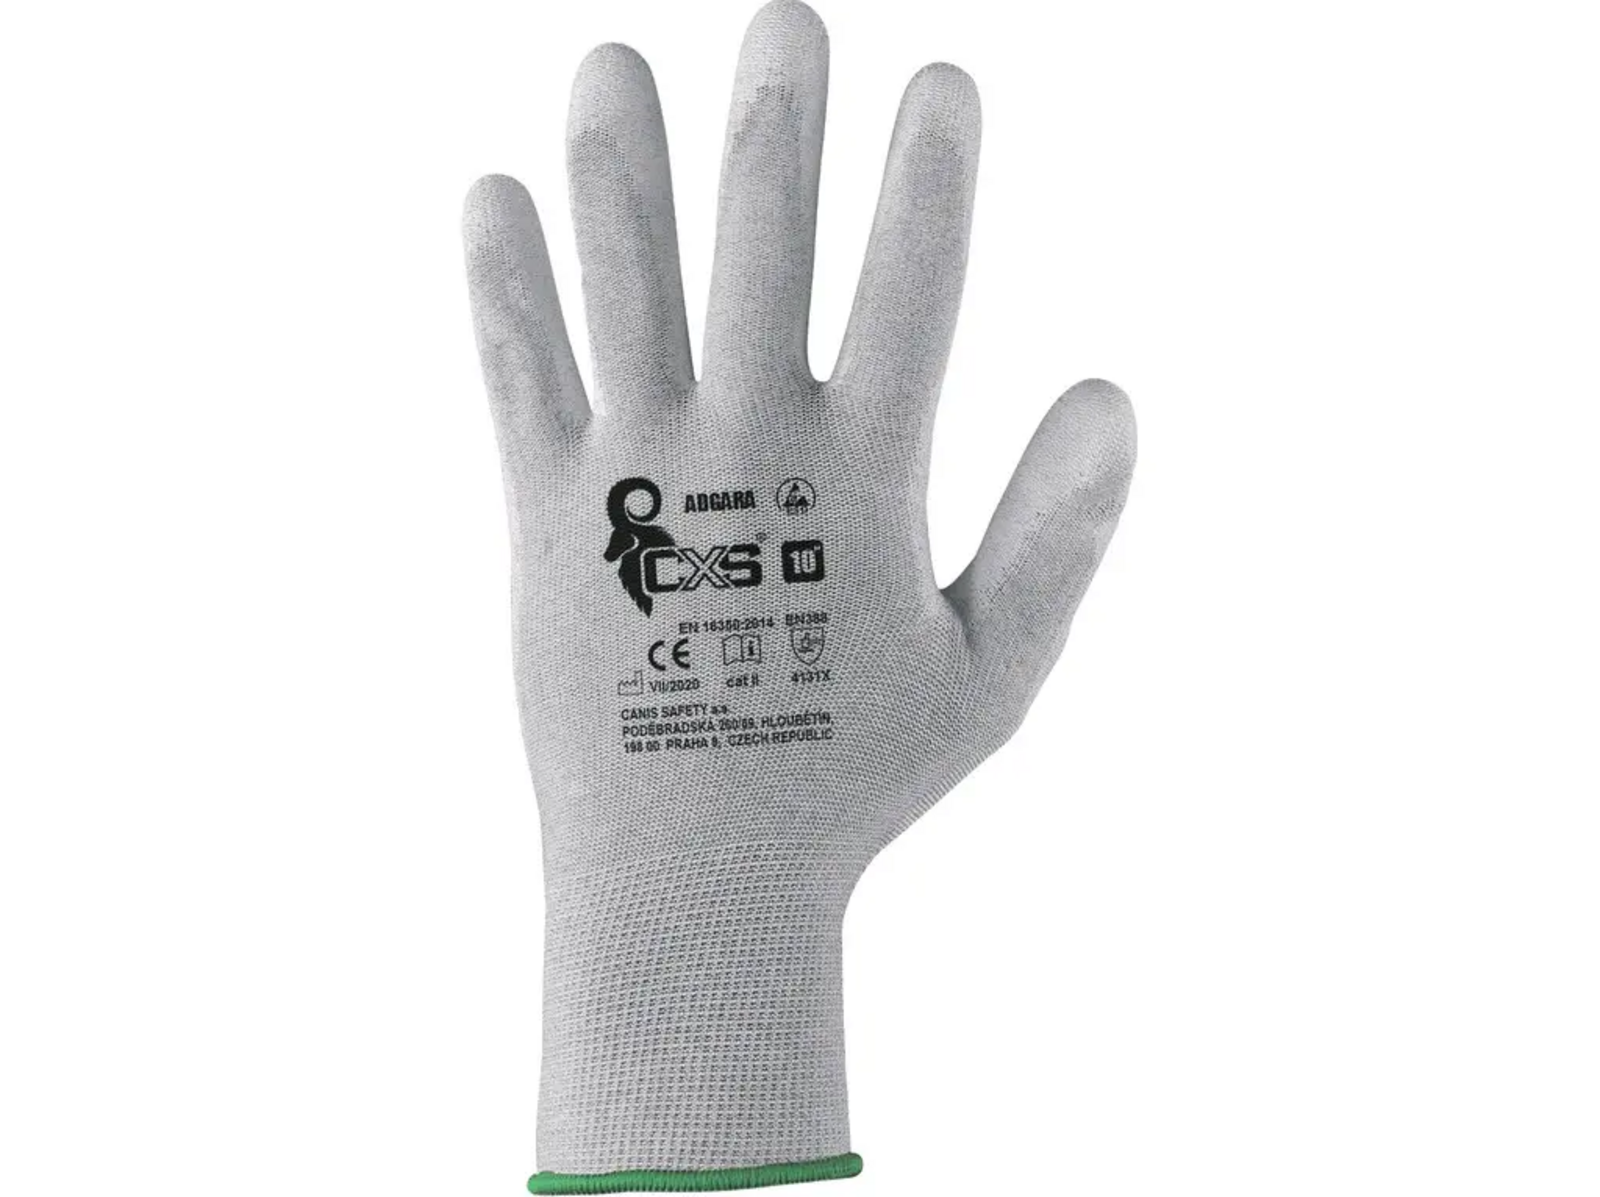 Povrstvené antistatické rukavice CXS Adgara - veľkosť: 11/XXL, farba: sivá